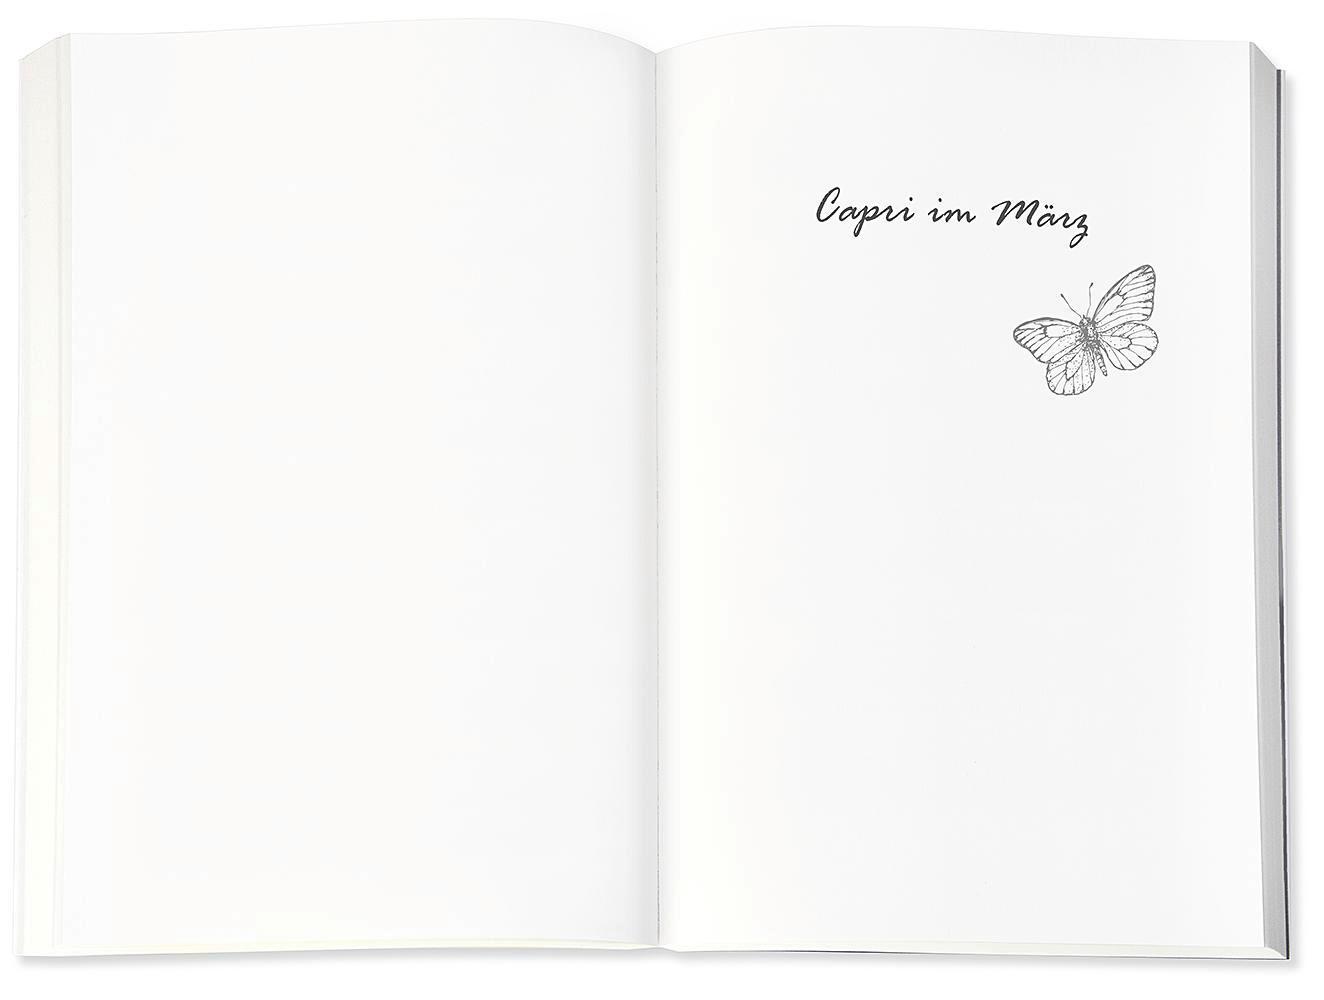 Bild: 9783426525128 | Der Schmetterlingsgarten | Roman | Marie Matisek | Taschenbuch | 2020